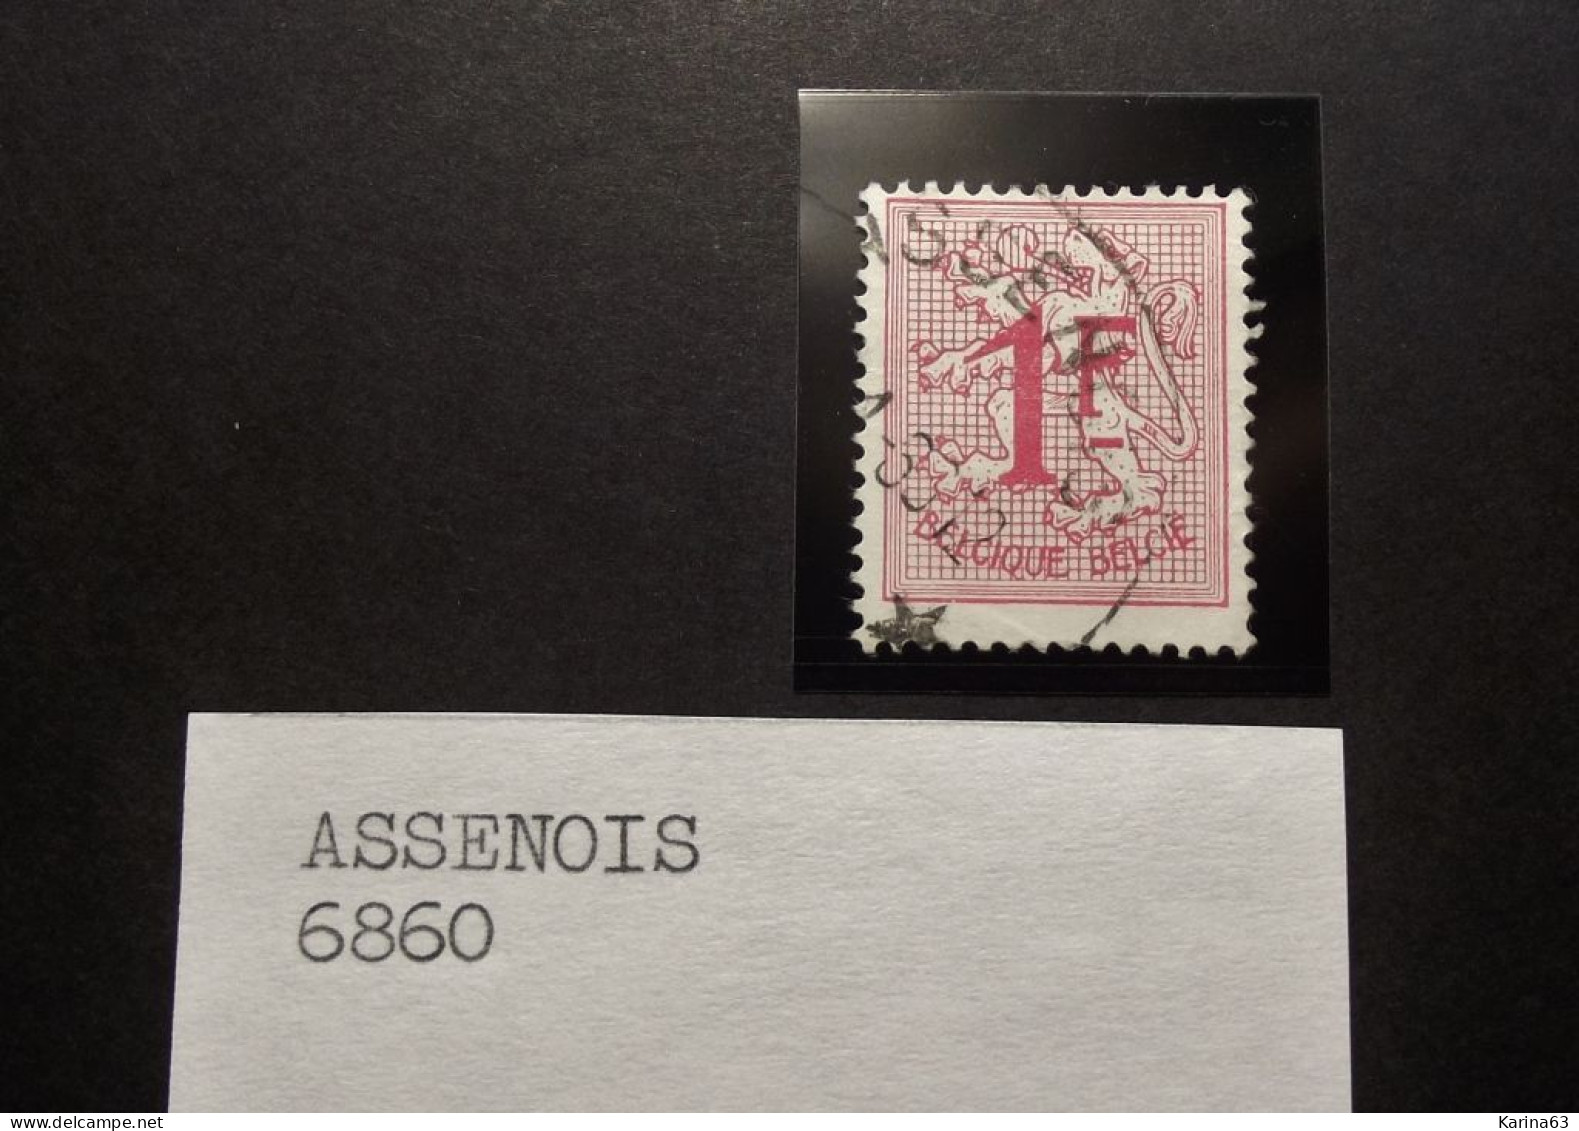 Belgie Belgique - 1957 -  OPB/COB  N° 1027  - 1 Fr  - Obl.  -  ASSENOIS - Used Stamps